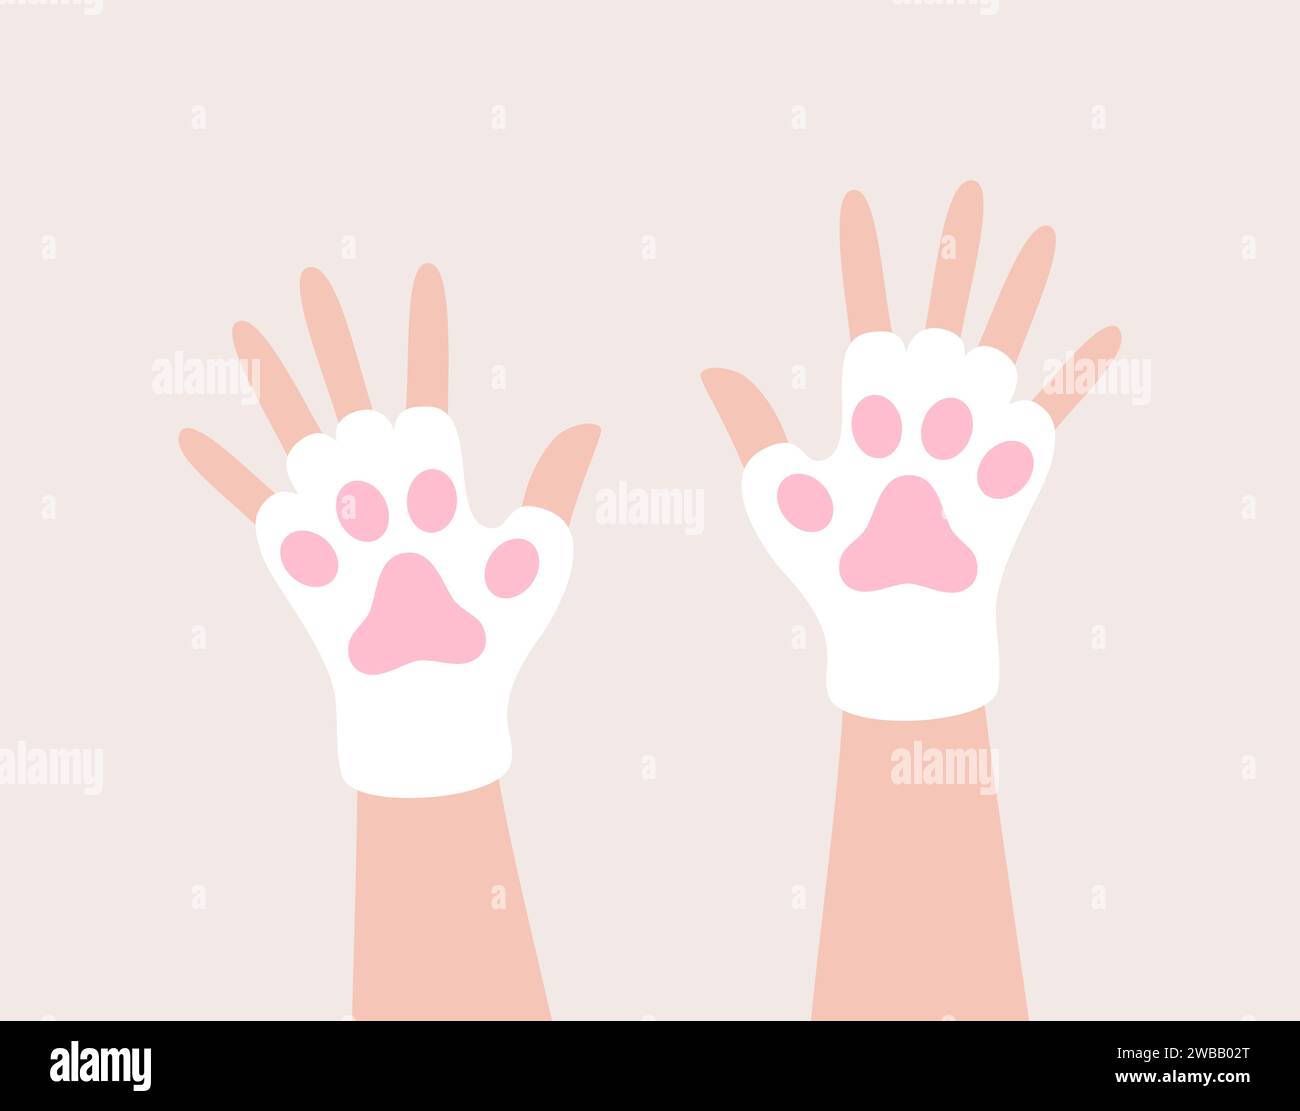 Hände in weißen und rosafarbenen Fäustlingen in Form von Katzenpfoten. Illustration des flachen Vektors Stock Vektor